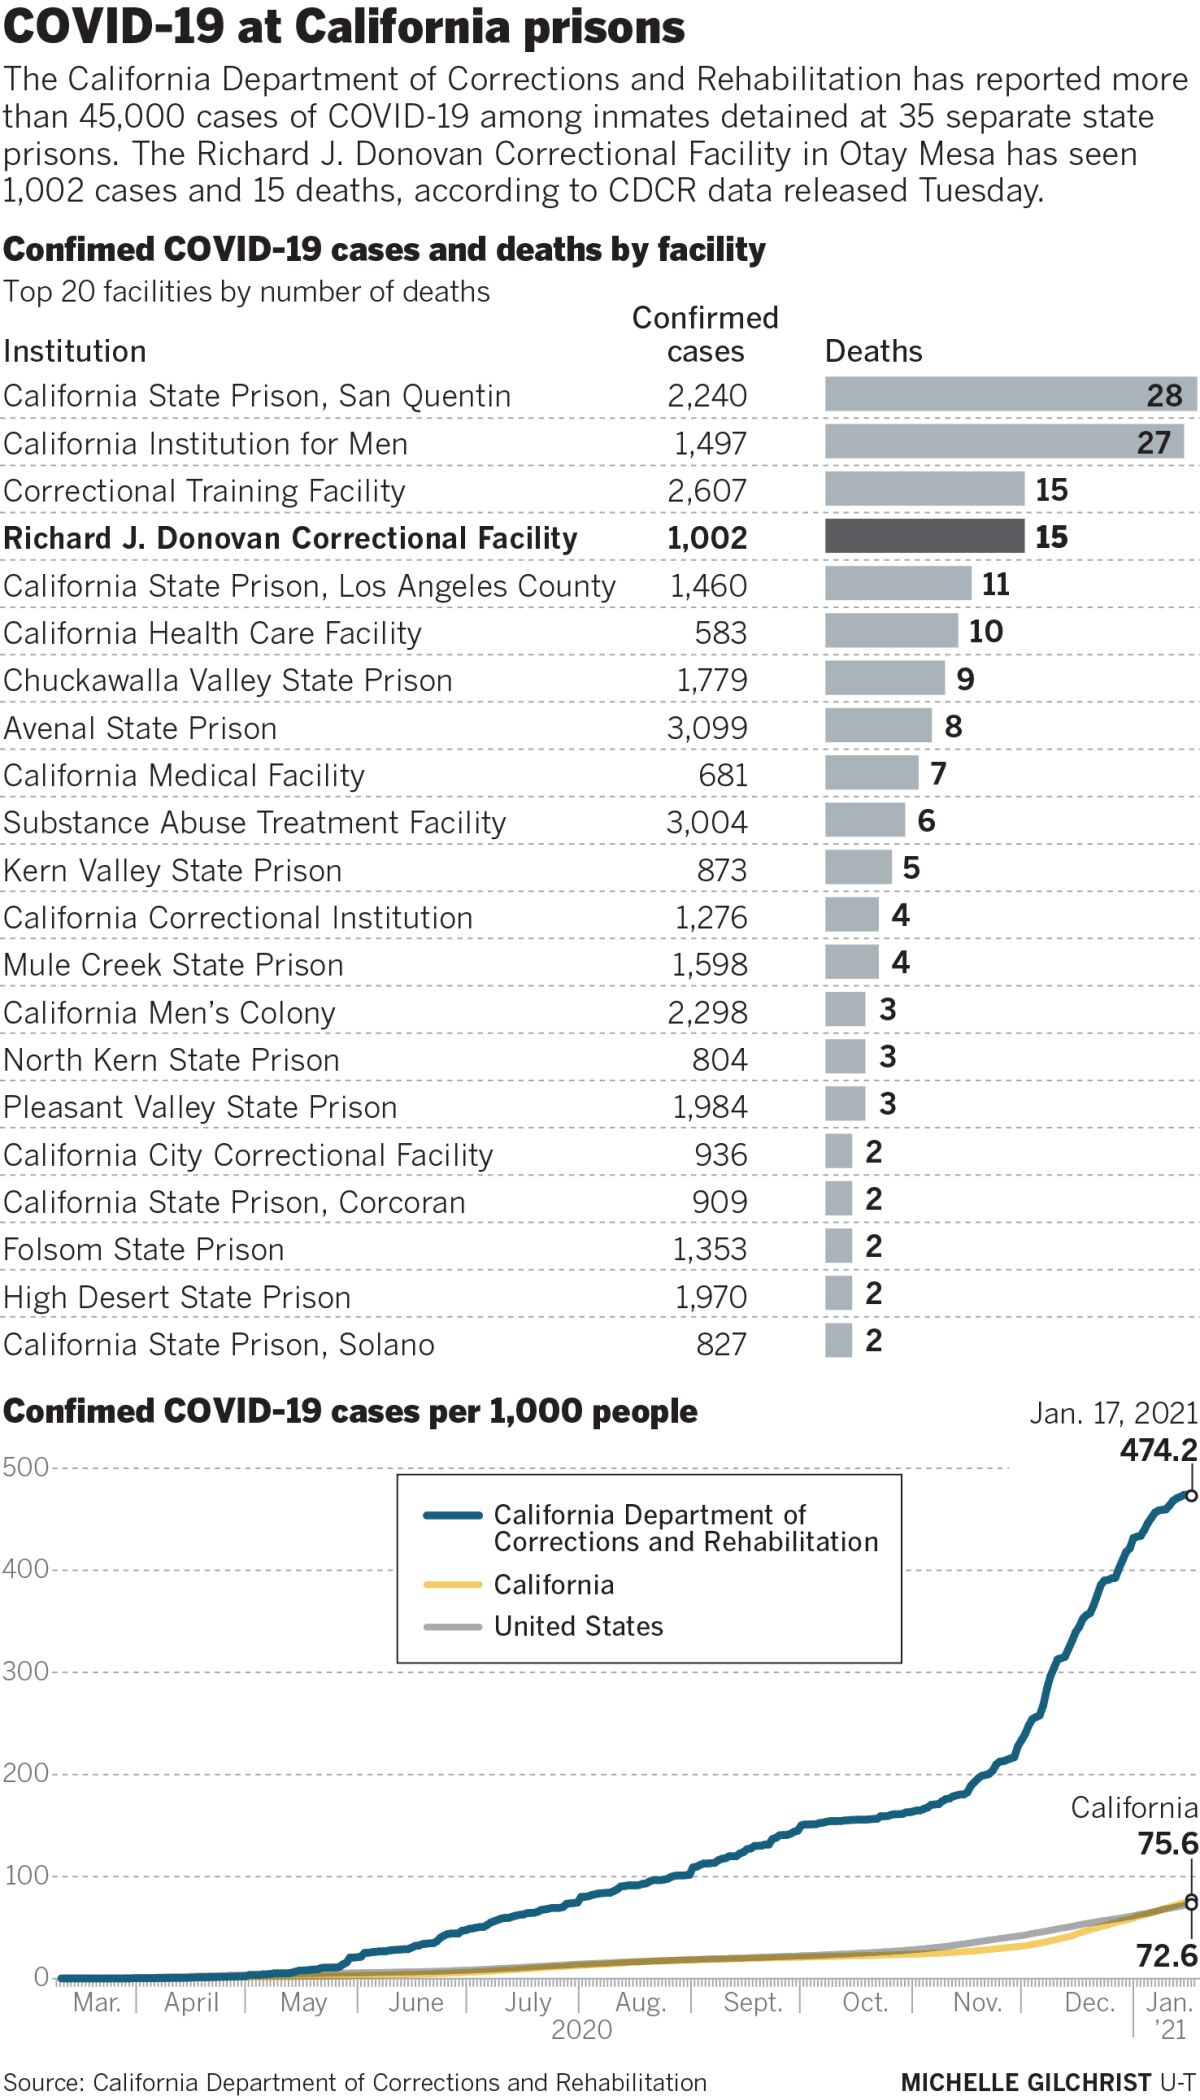 COVID-19 at California prisons